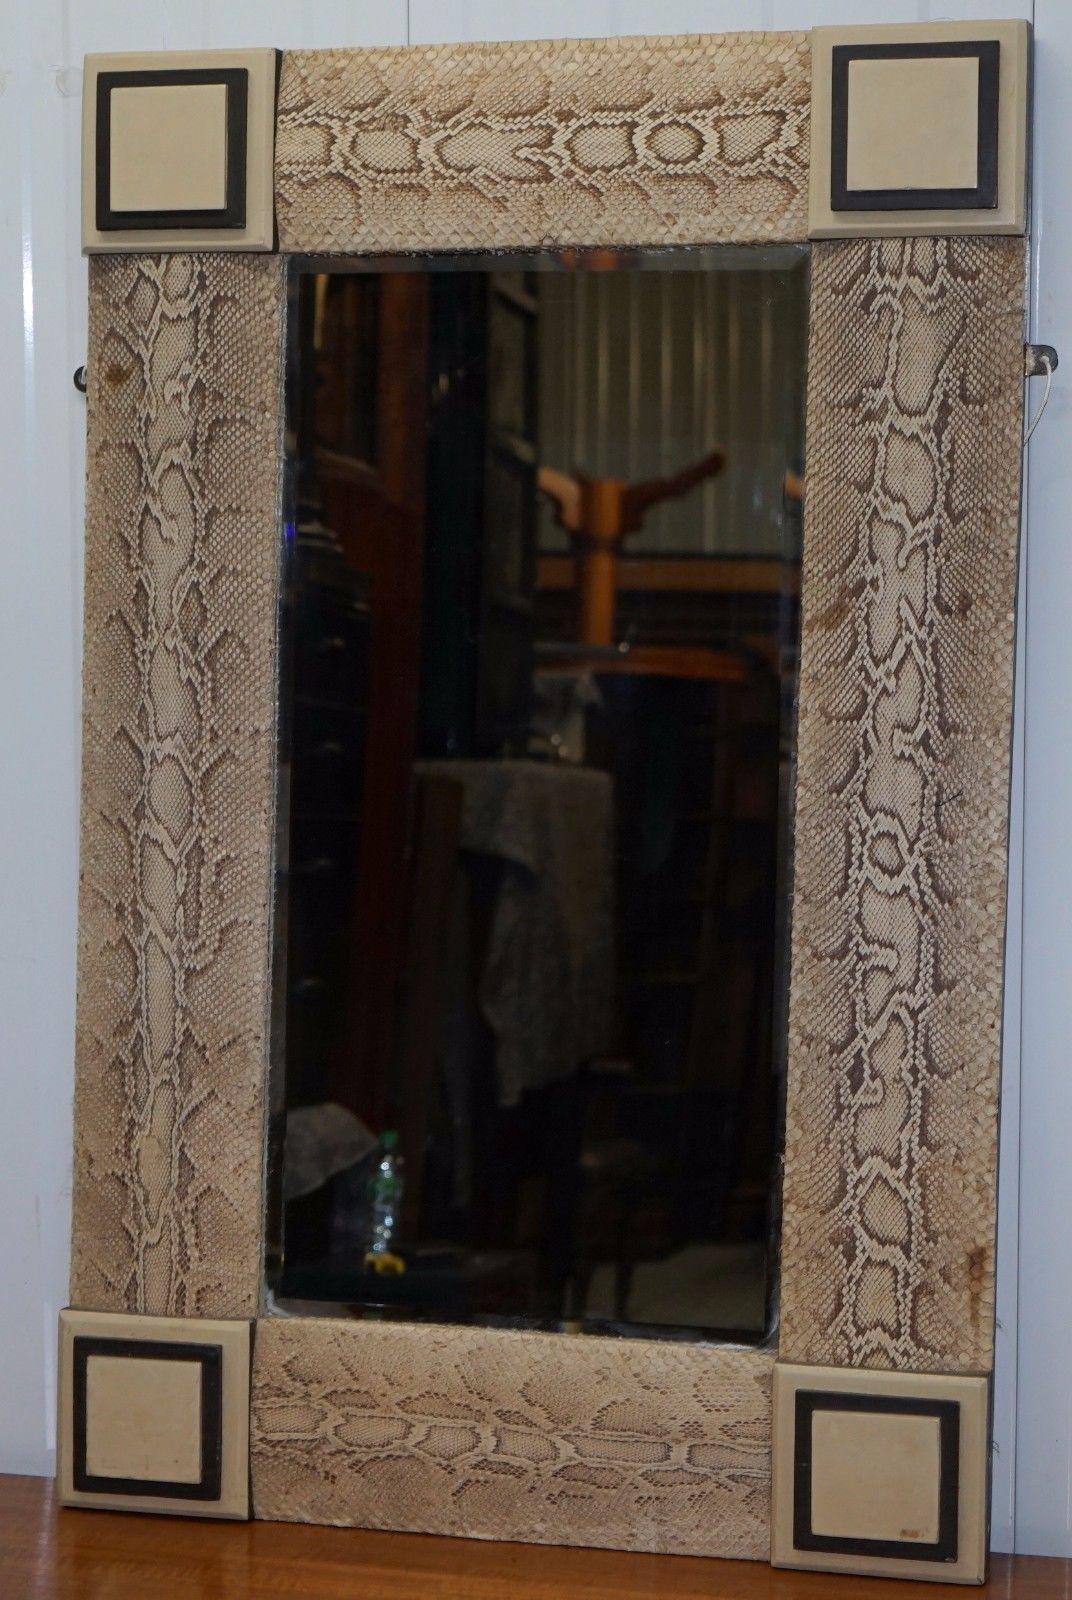 Nous sommes ravis d'offrir à la vente ce charmant miroir ancien encadré en bois et recouvert de peau de serpent, fait à la main.

Il m'a été vendu comme ayant été acheté chez Versace, mais en l'absence de leur label, je ne le mentionne pas en tant